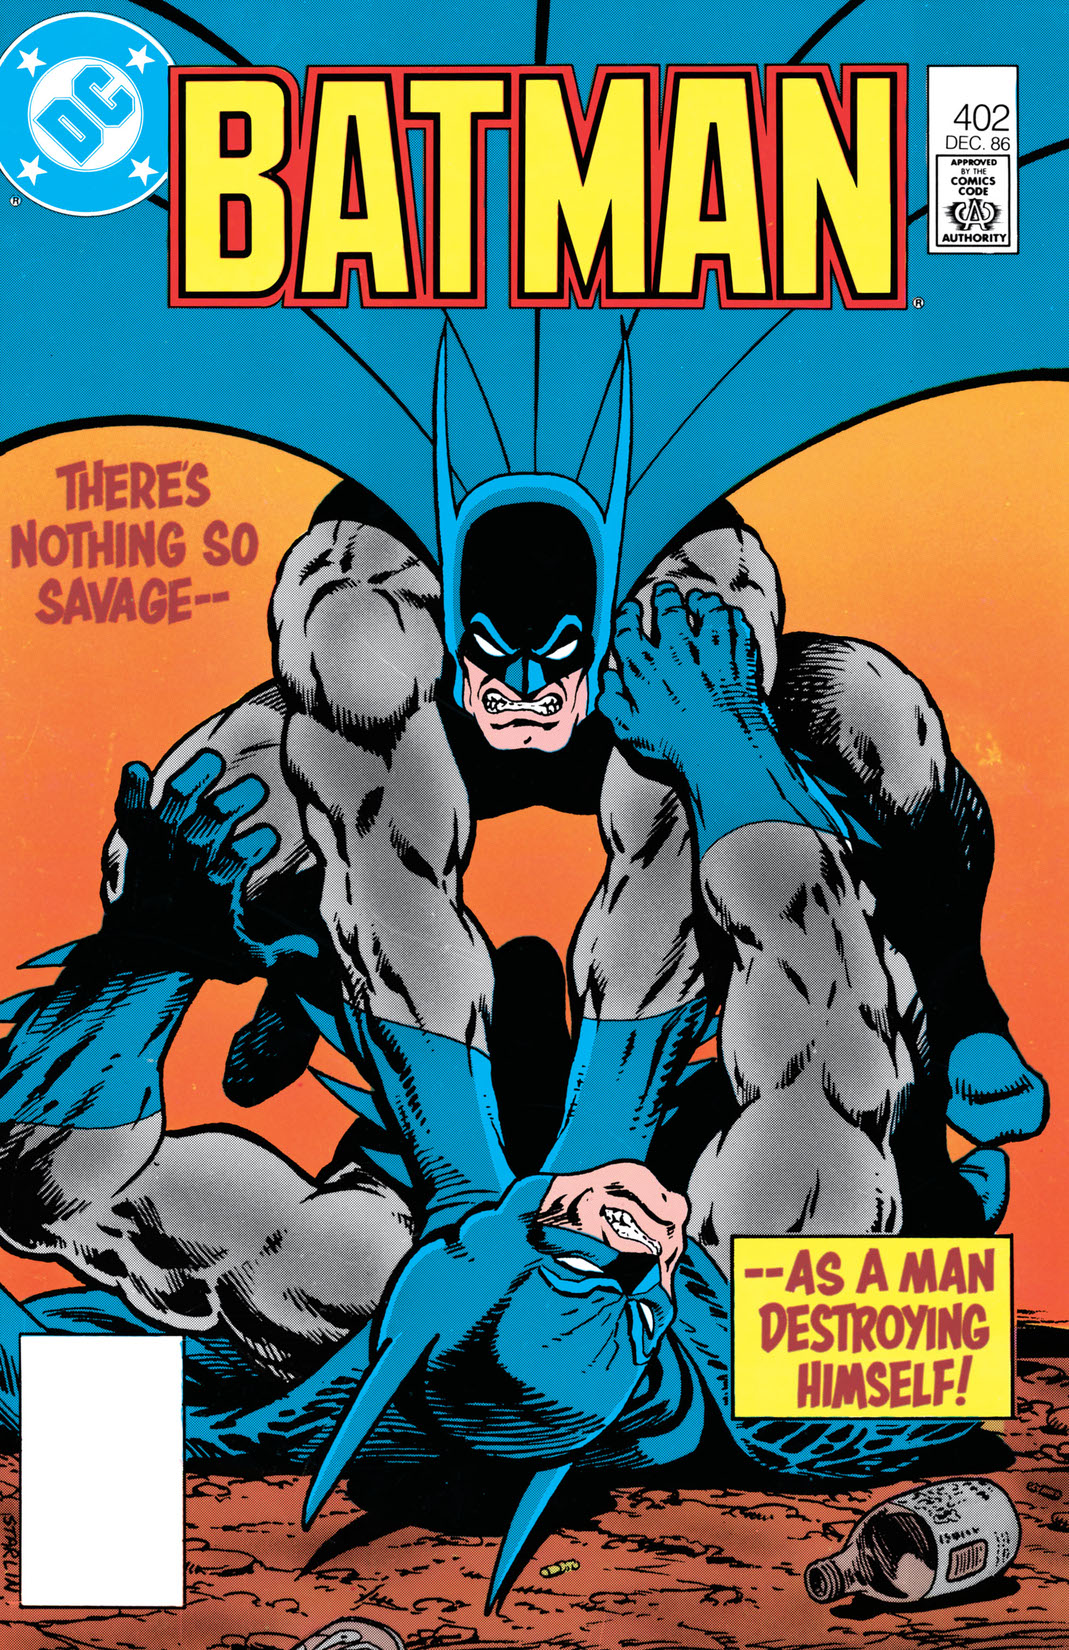 Batman (1940-) #402 preview images